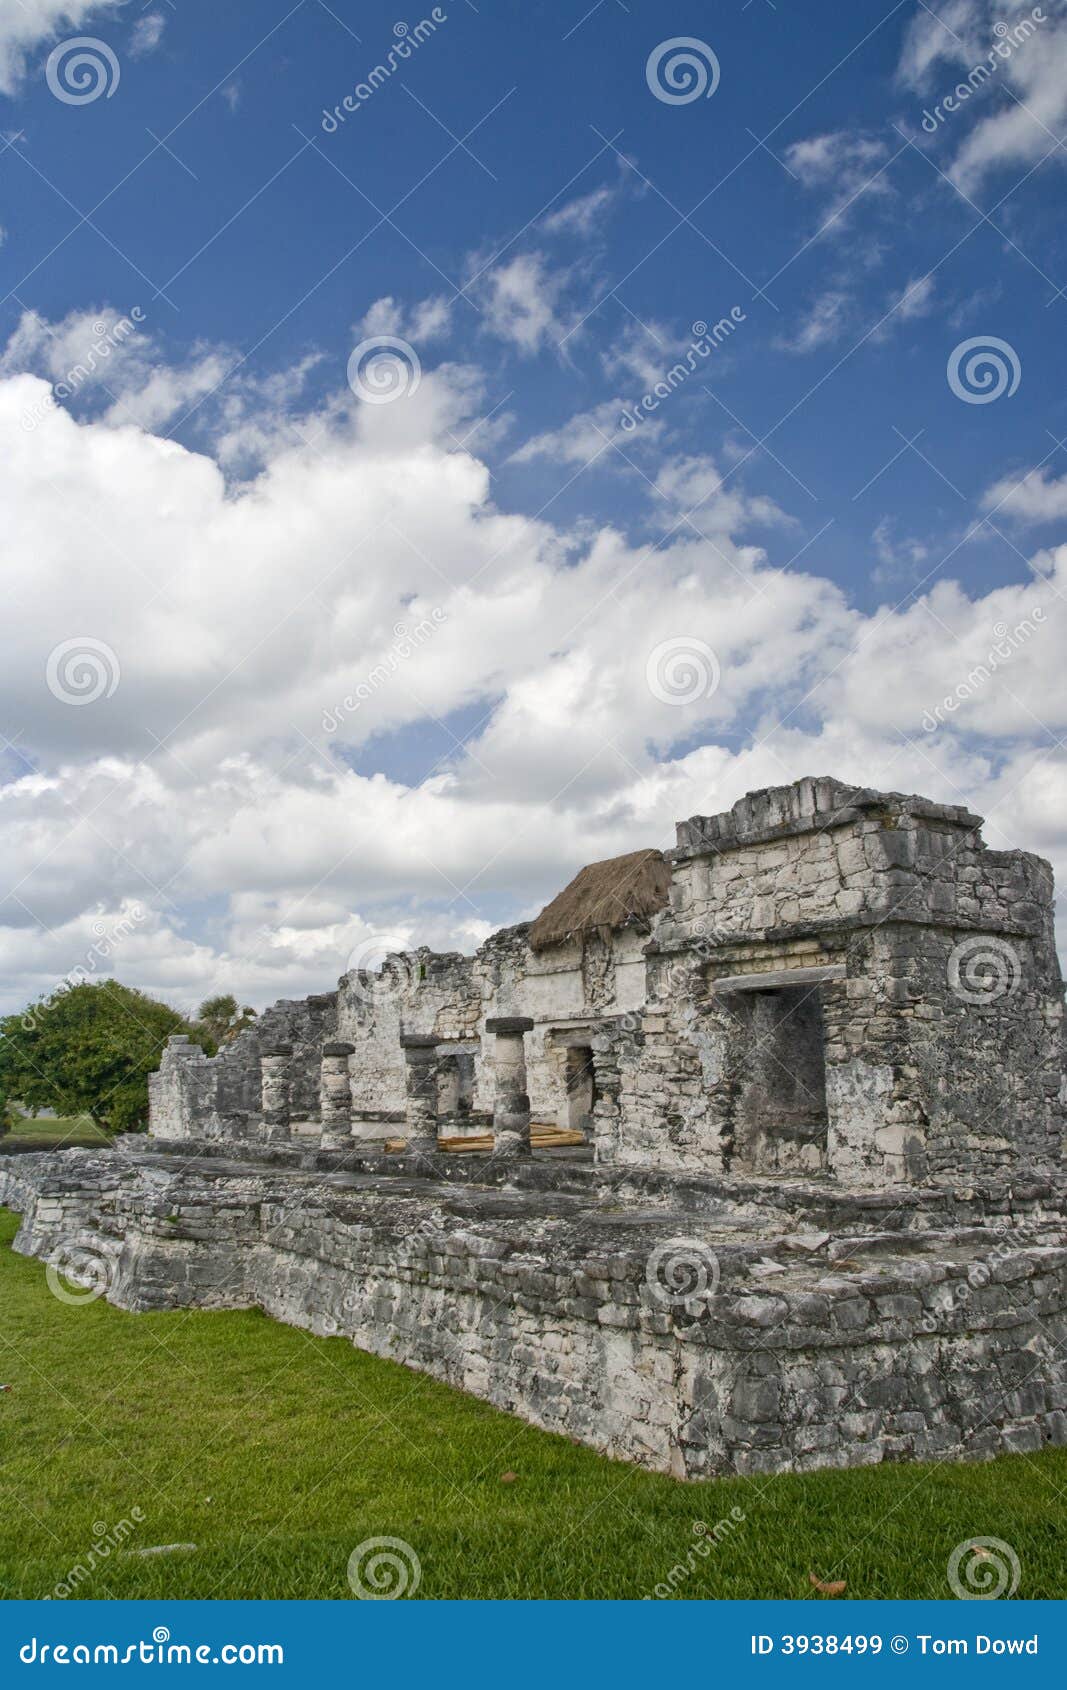 ruins at tulum mexico